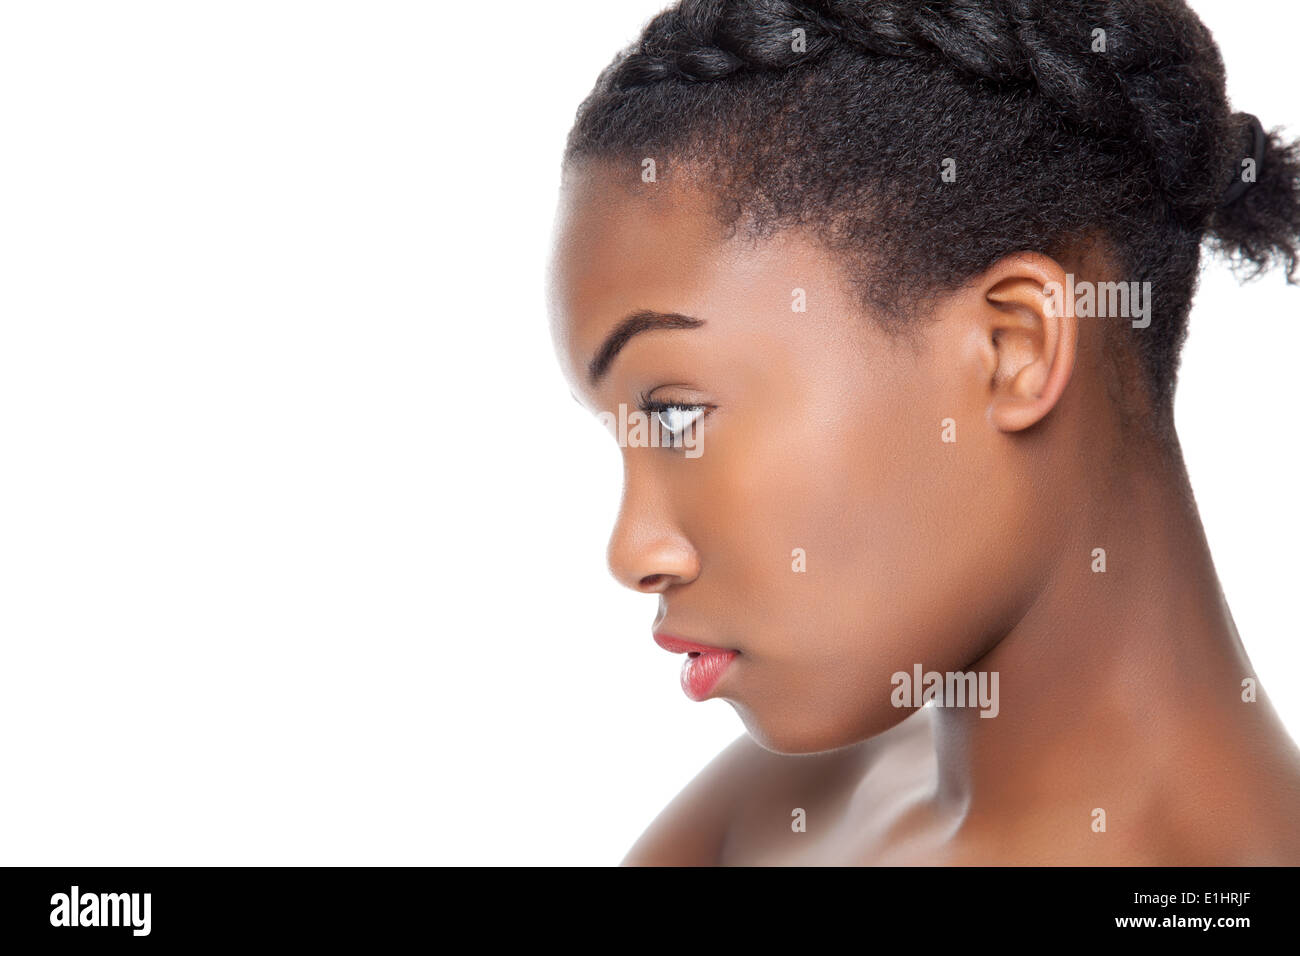 Vue de profil d'une jeune beauté noire Banque D'Images